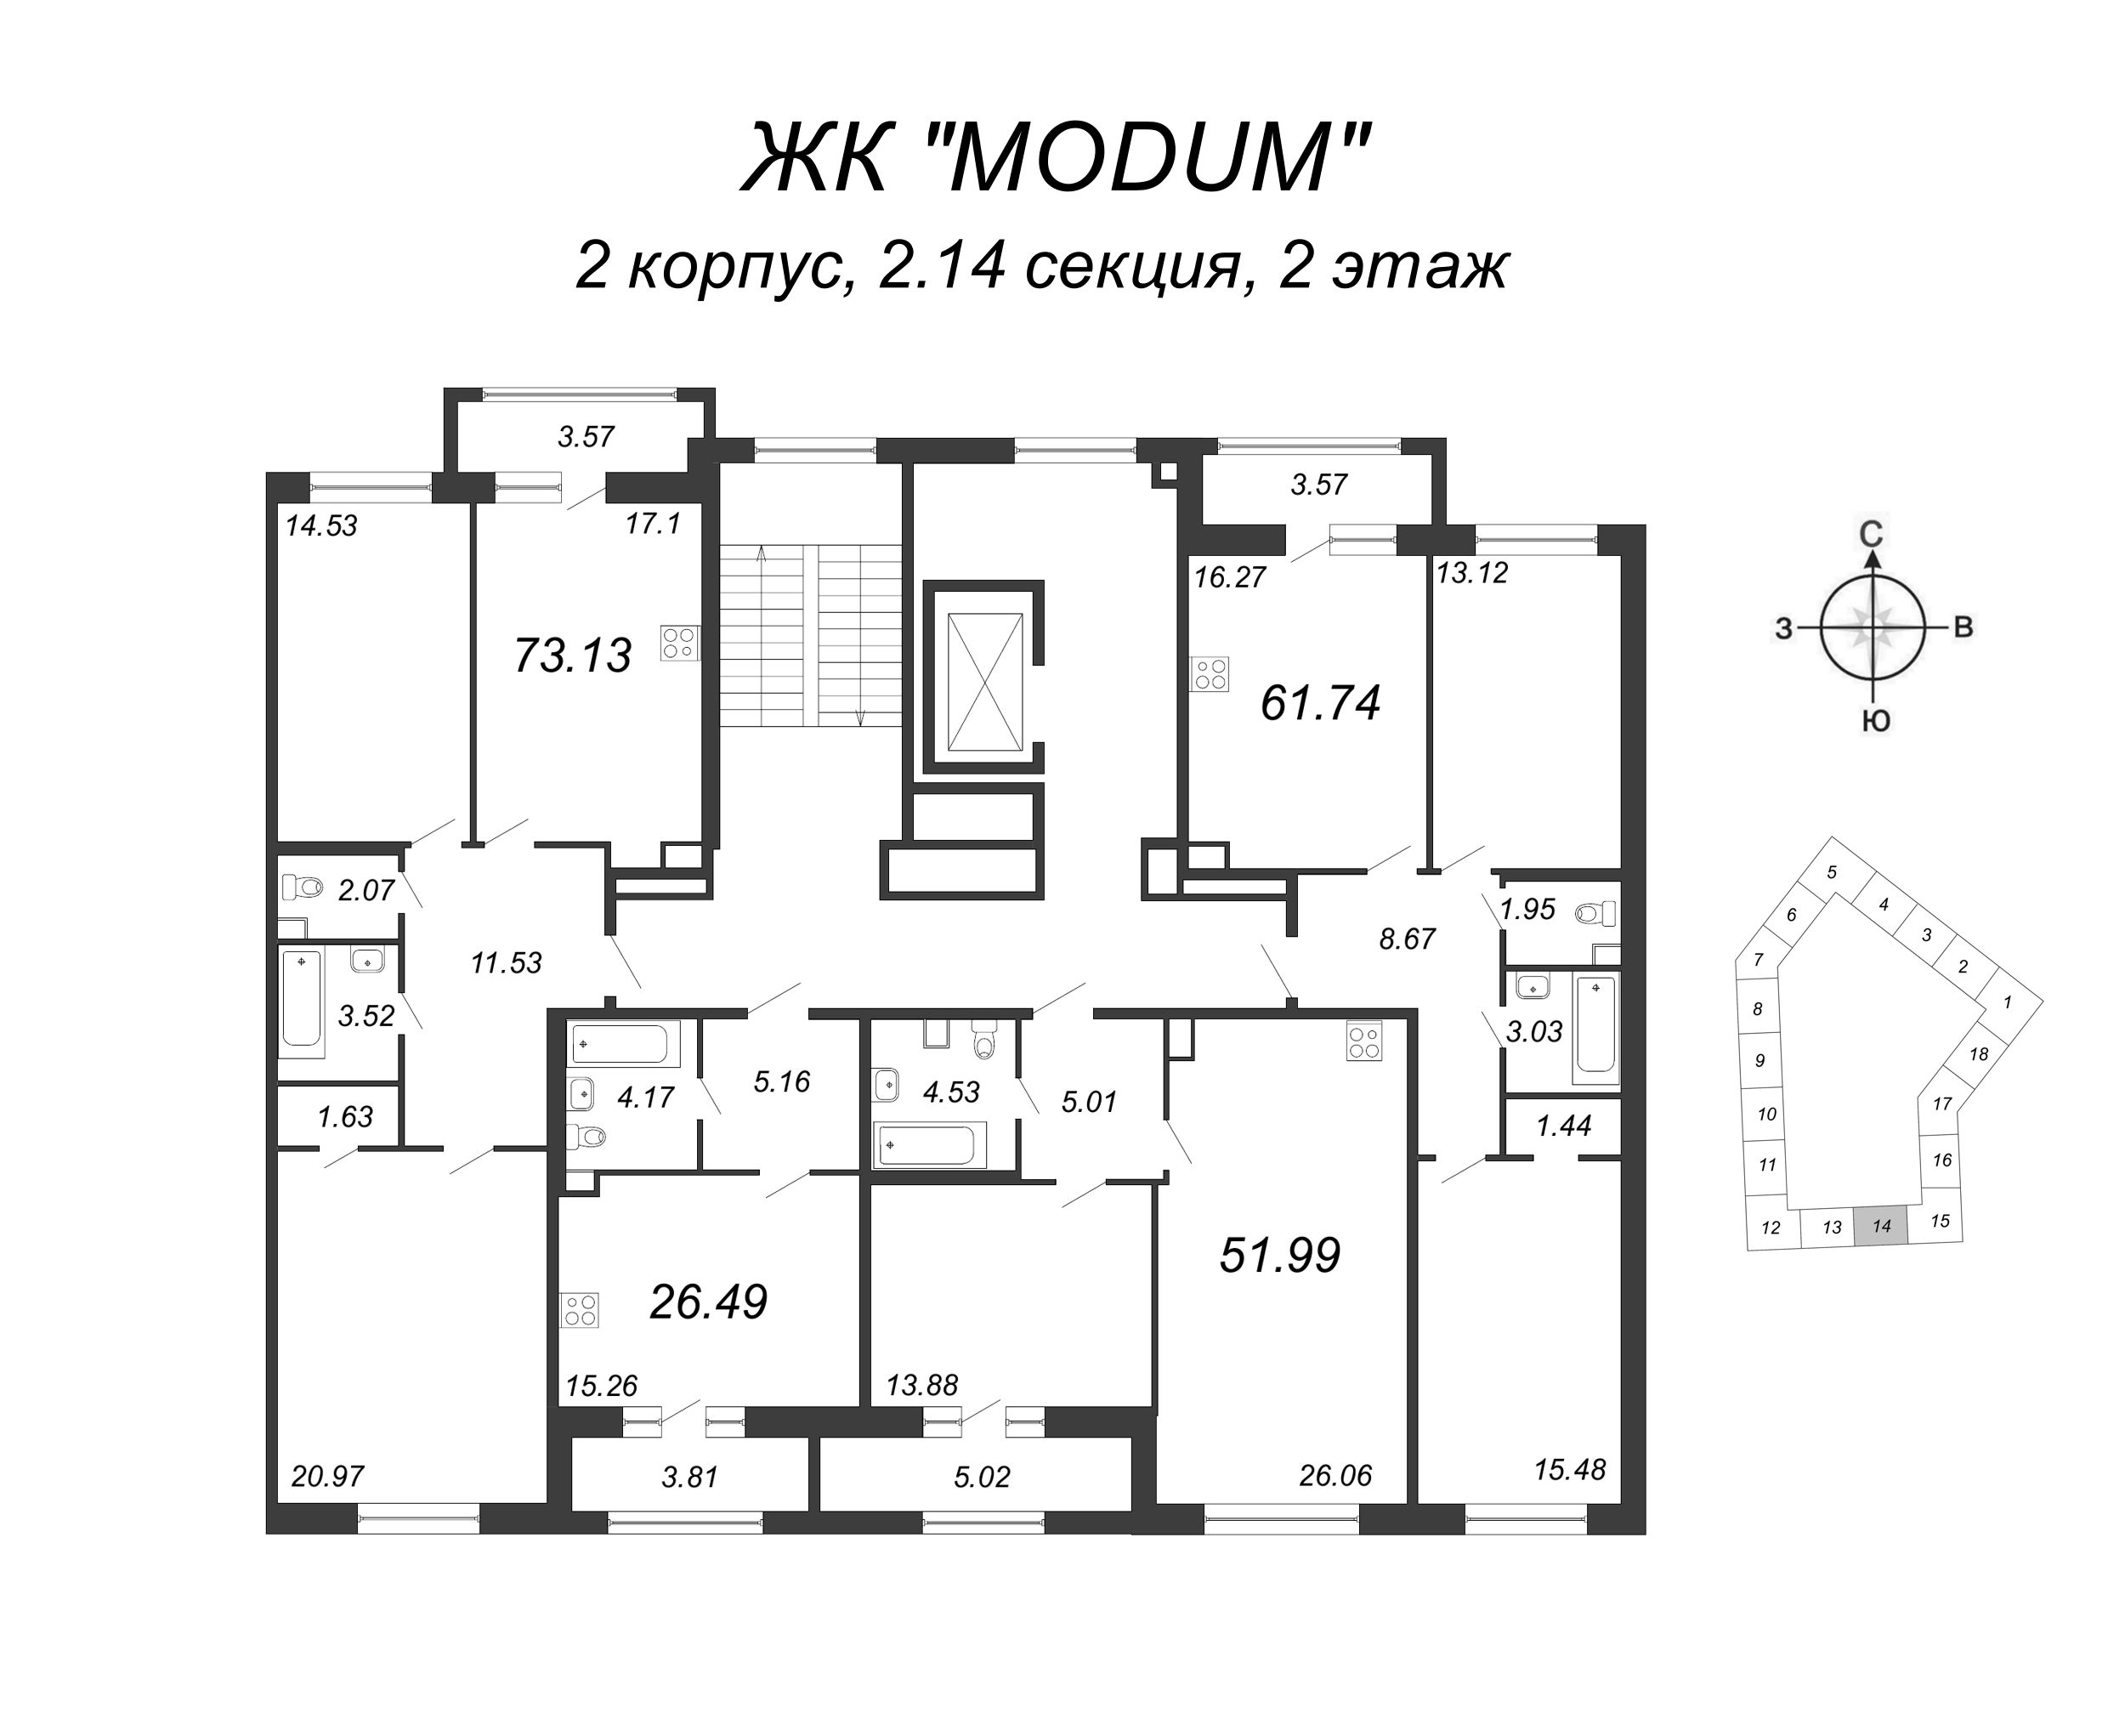 3-комнатная (Евро) квартира, 73.13 м² в ЖК "Modum" - планировка этажа